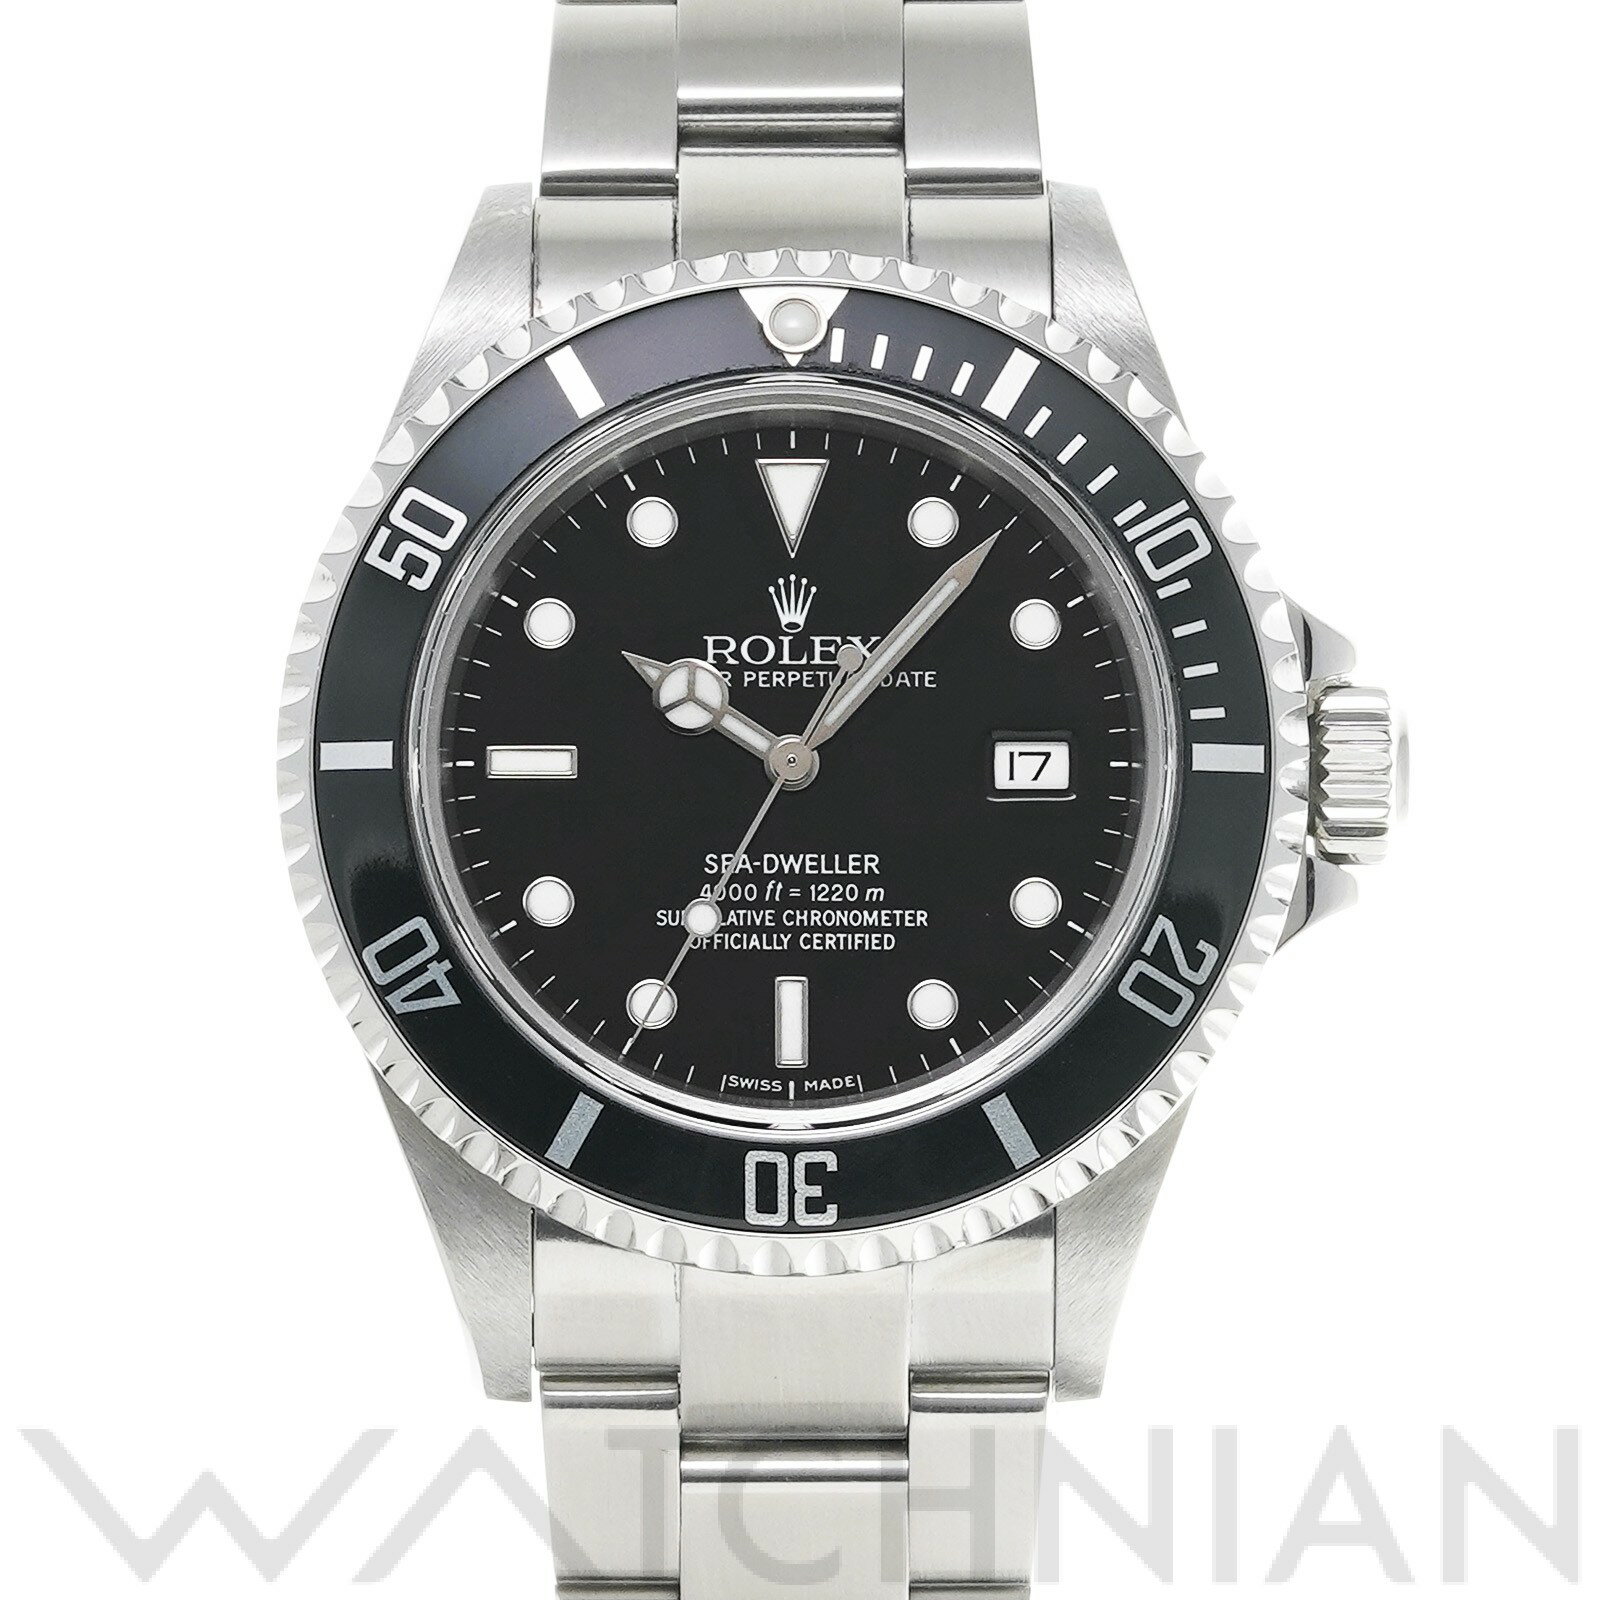 【ローン60回払い無金利】【中古】 ロレックス ROLEX シードゥエラー 16600 F番(2003年頃製造) ブラック メンズ 腕時計